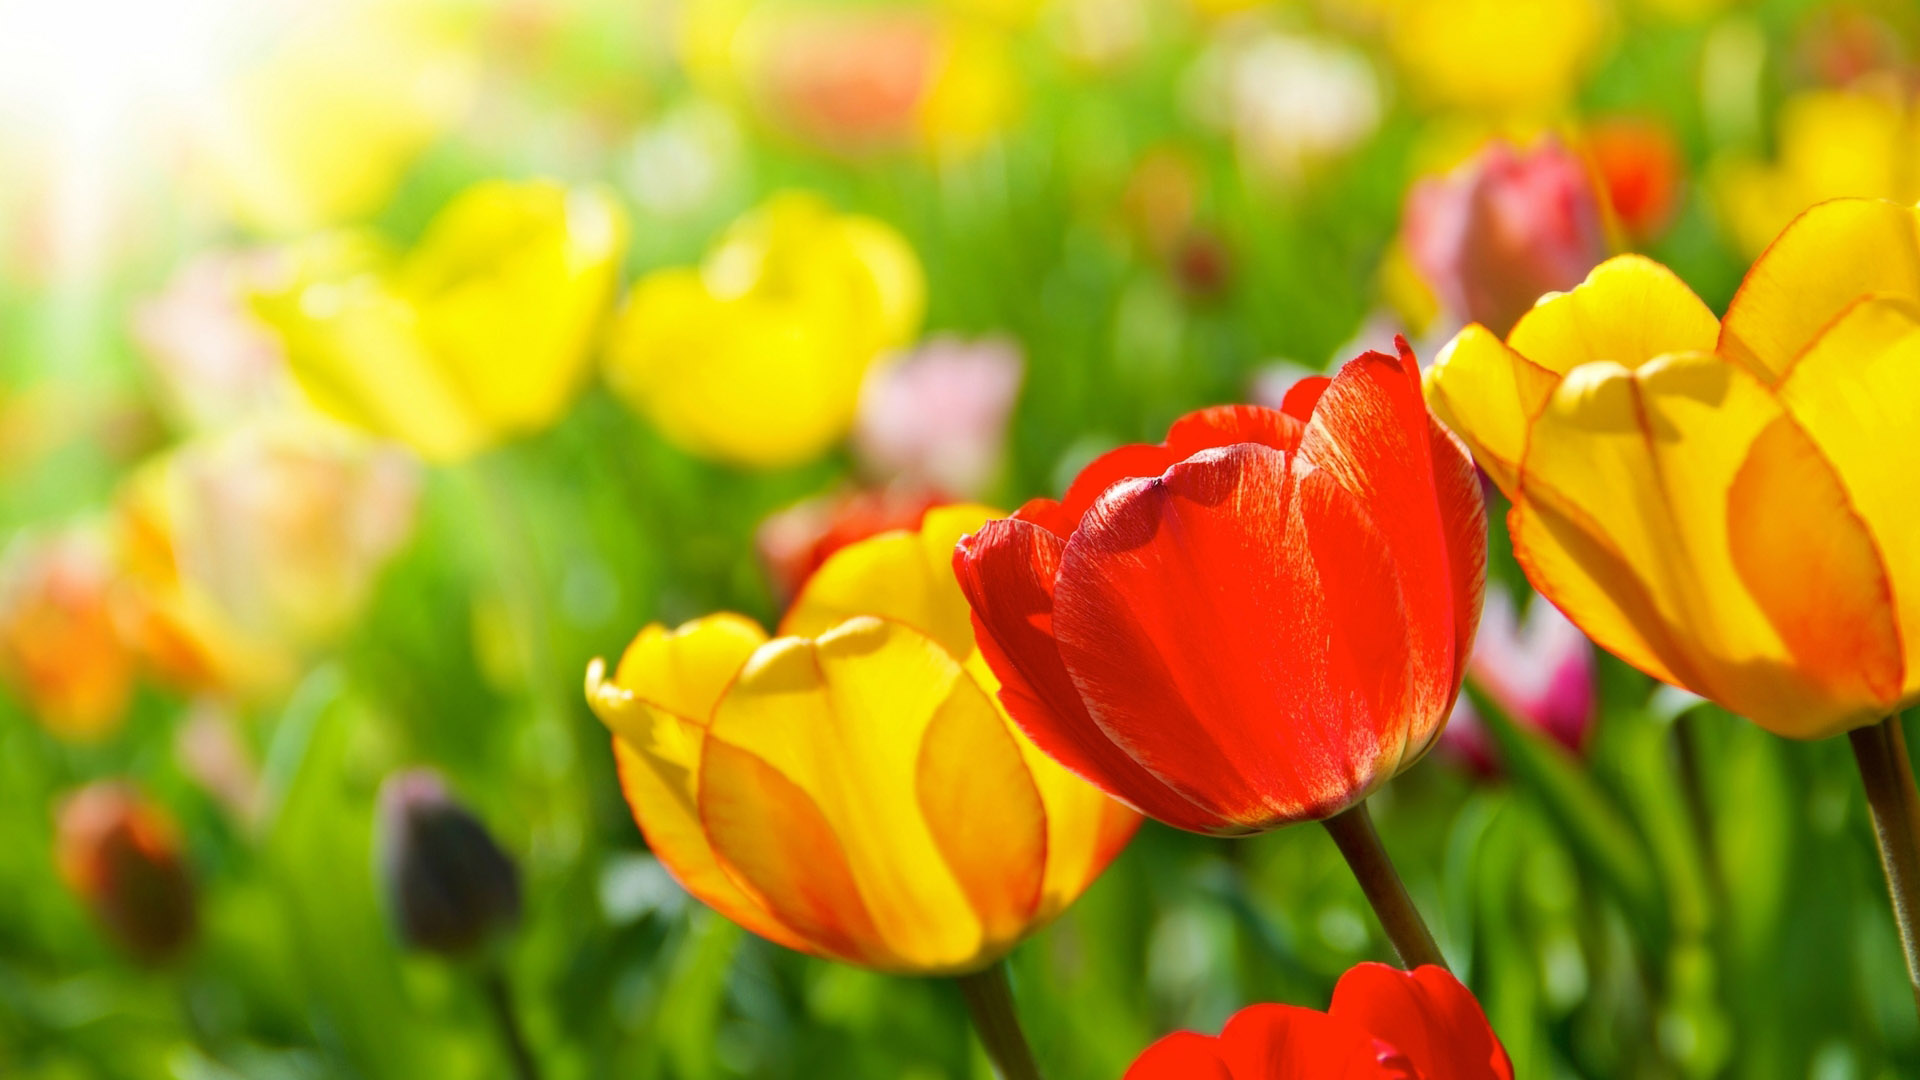 Desktop pictures of tulips in the wild